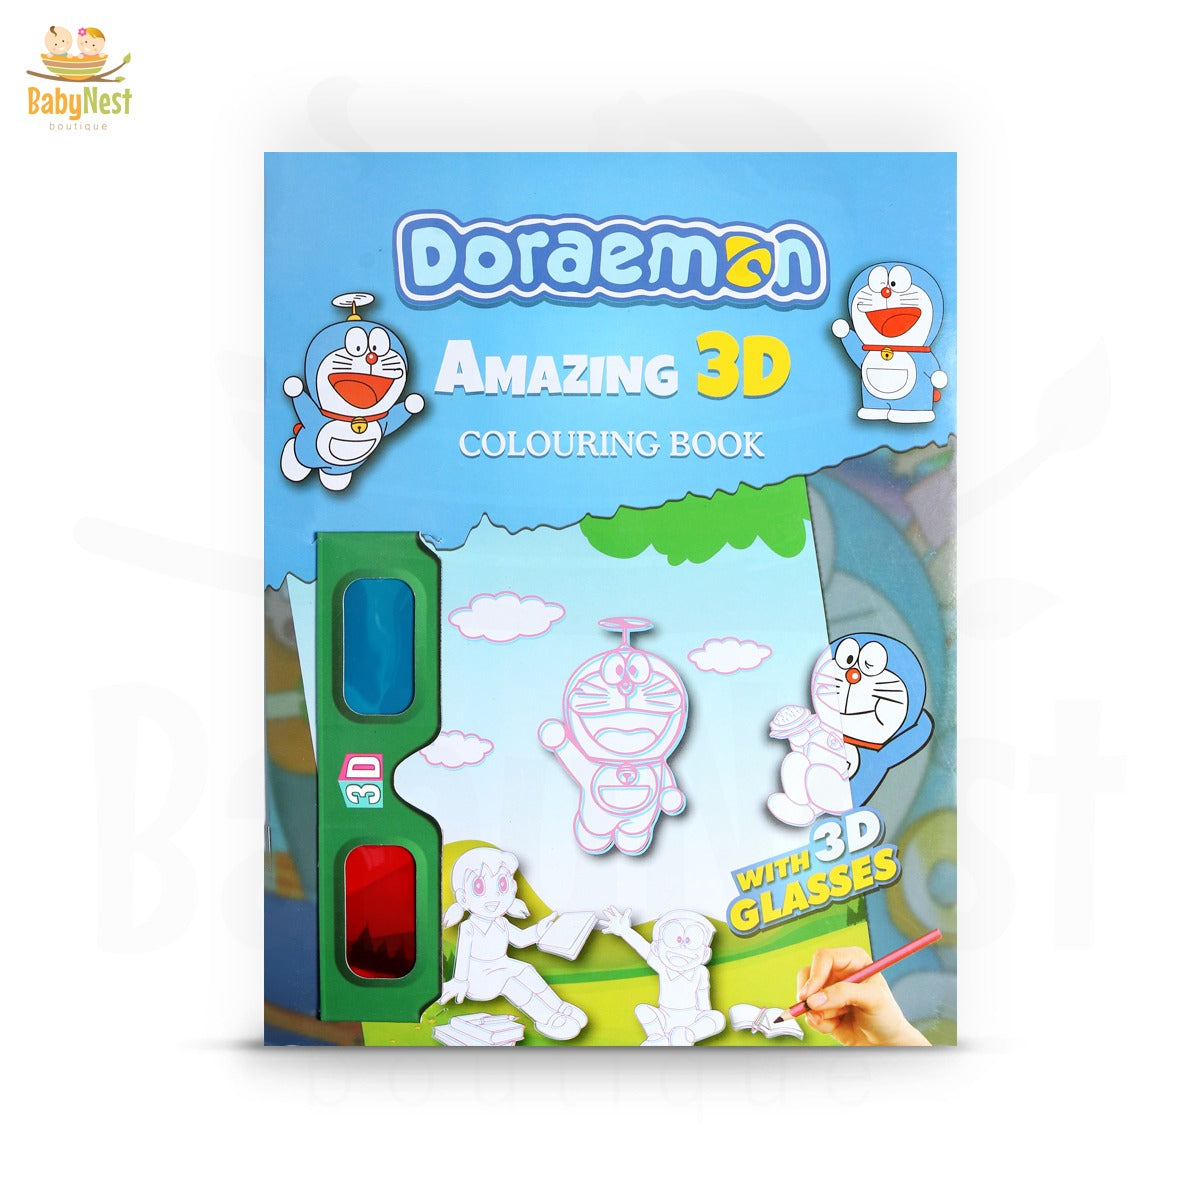 3D Coloring Book Daraemon (2108)